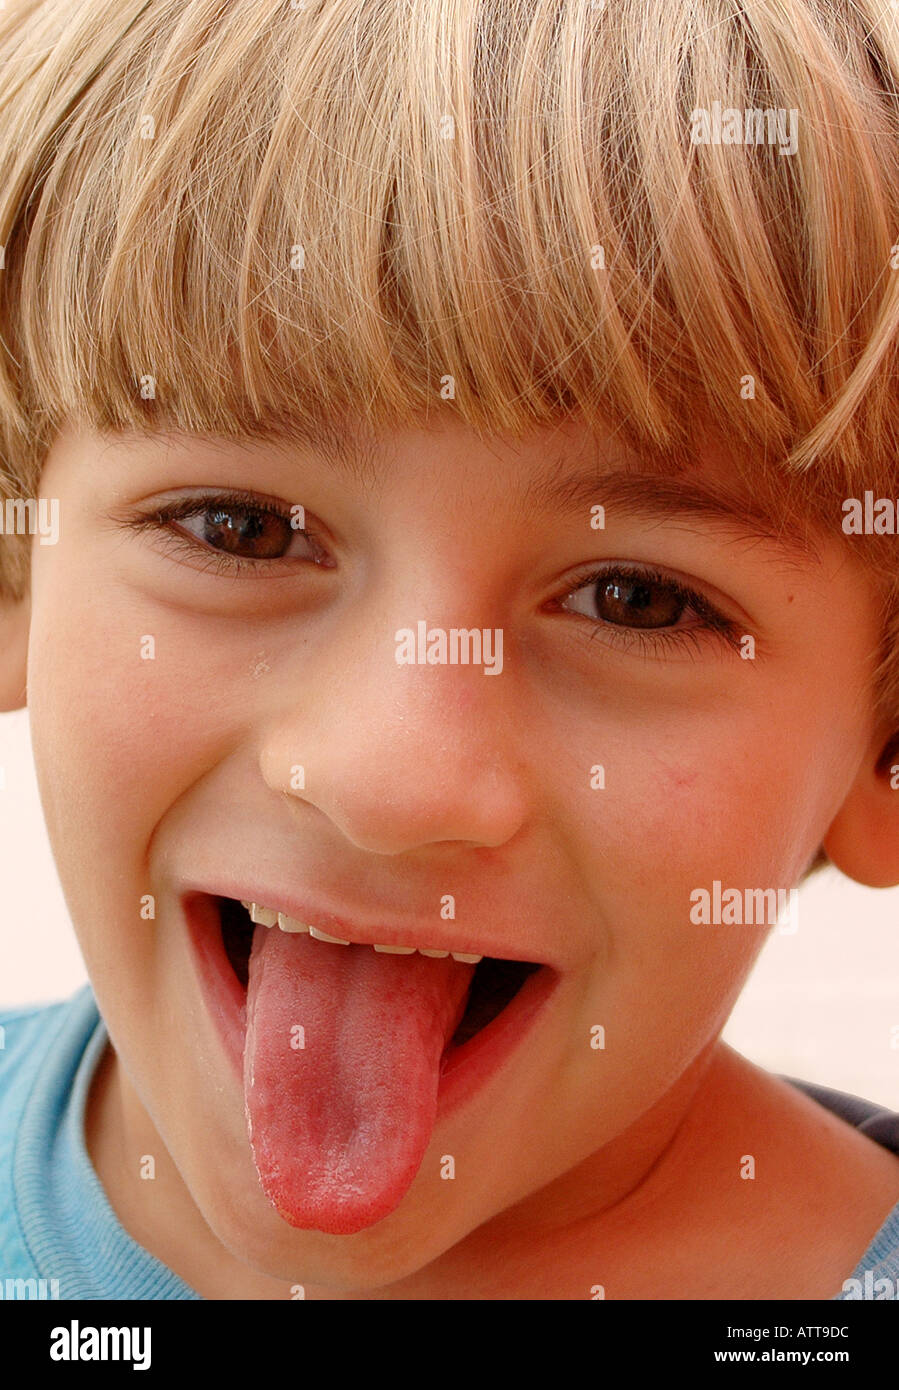 Signor Junge zeigt die Zunge signor boy mostra la linguetta Bildagentur Begsteiger online Foto Stock